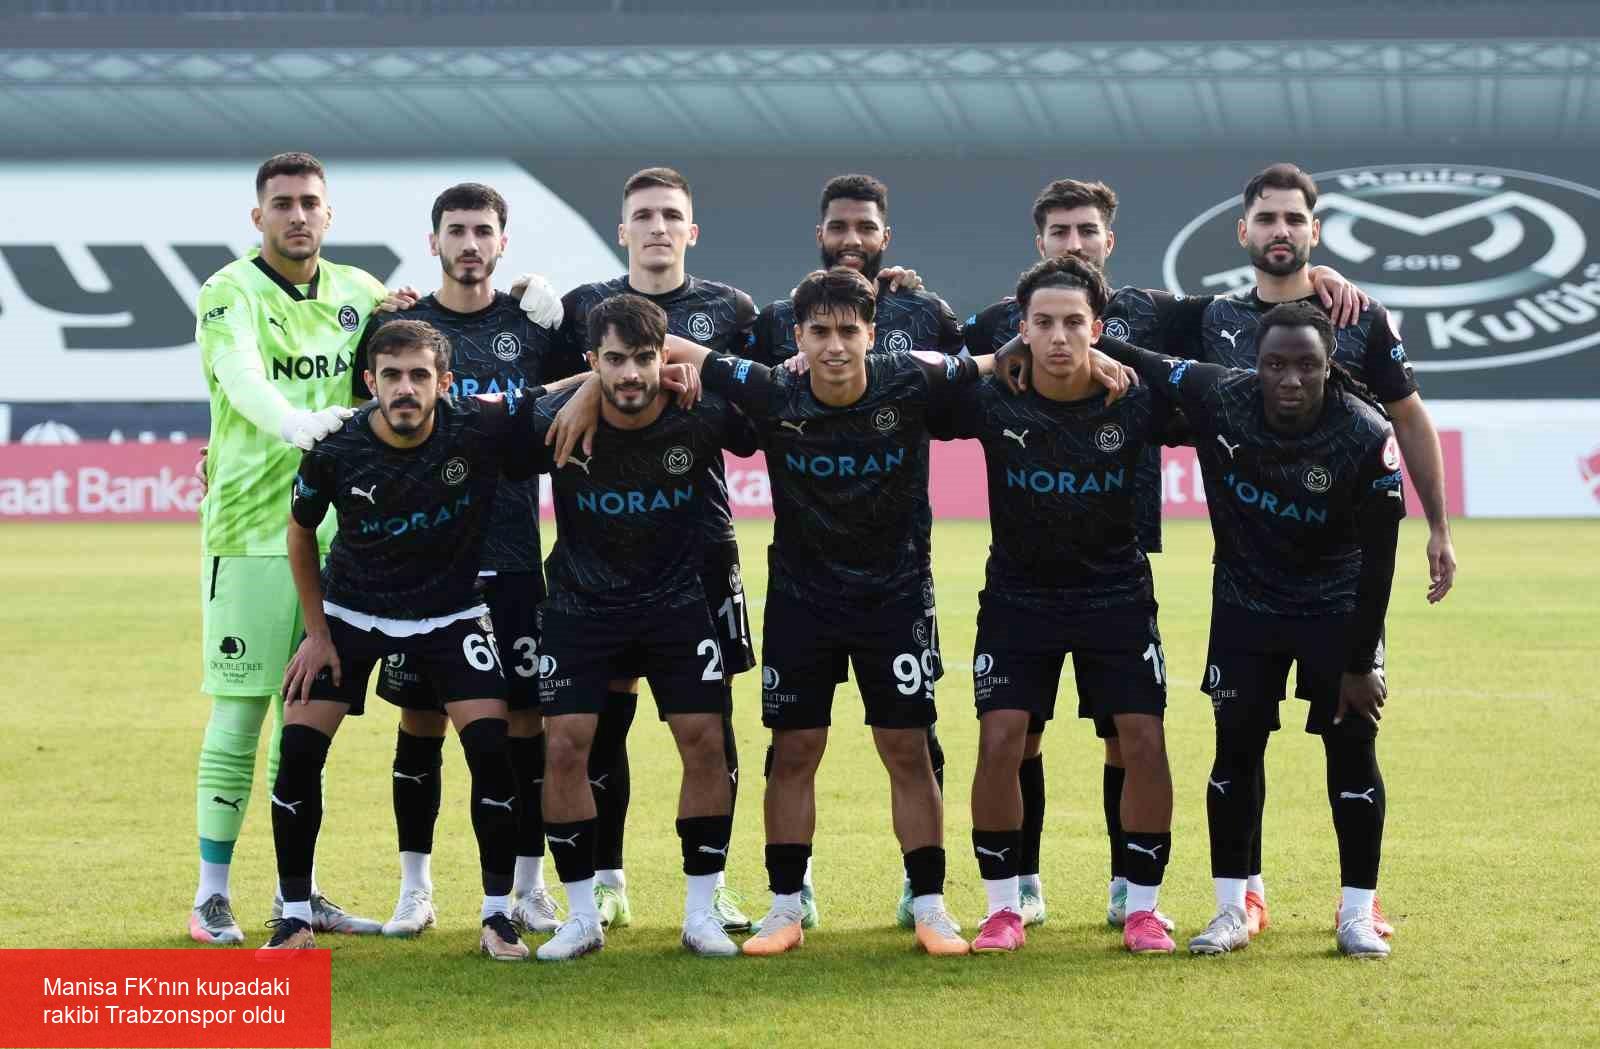 Manisa FK’nın kupadaki rakibi Trabzonspor oldu